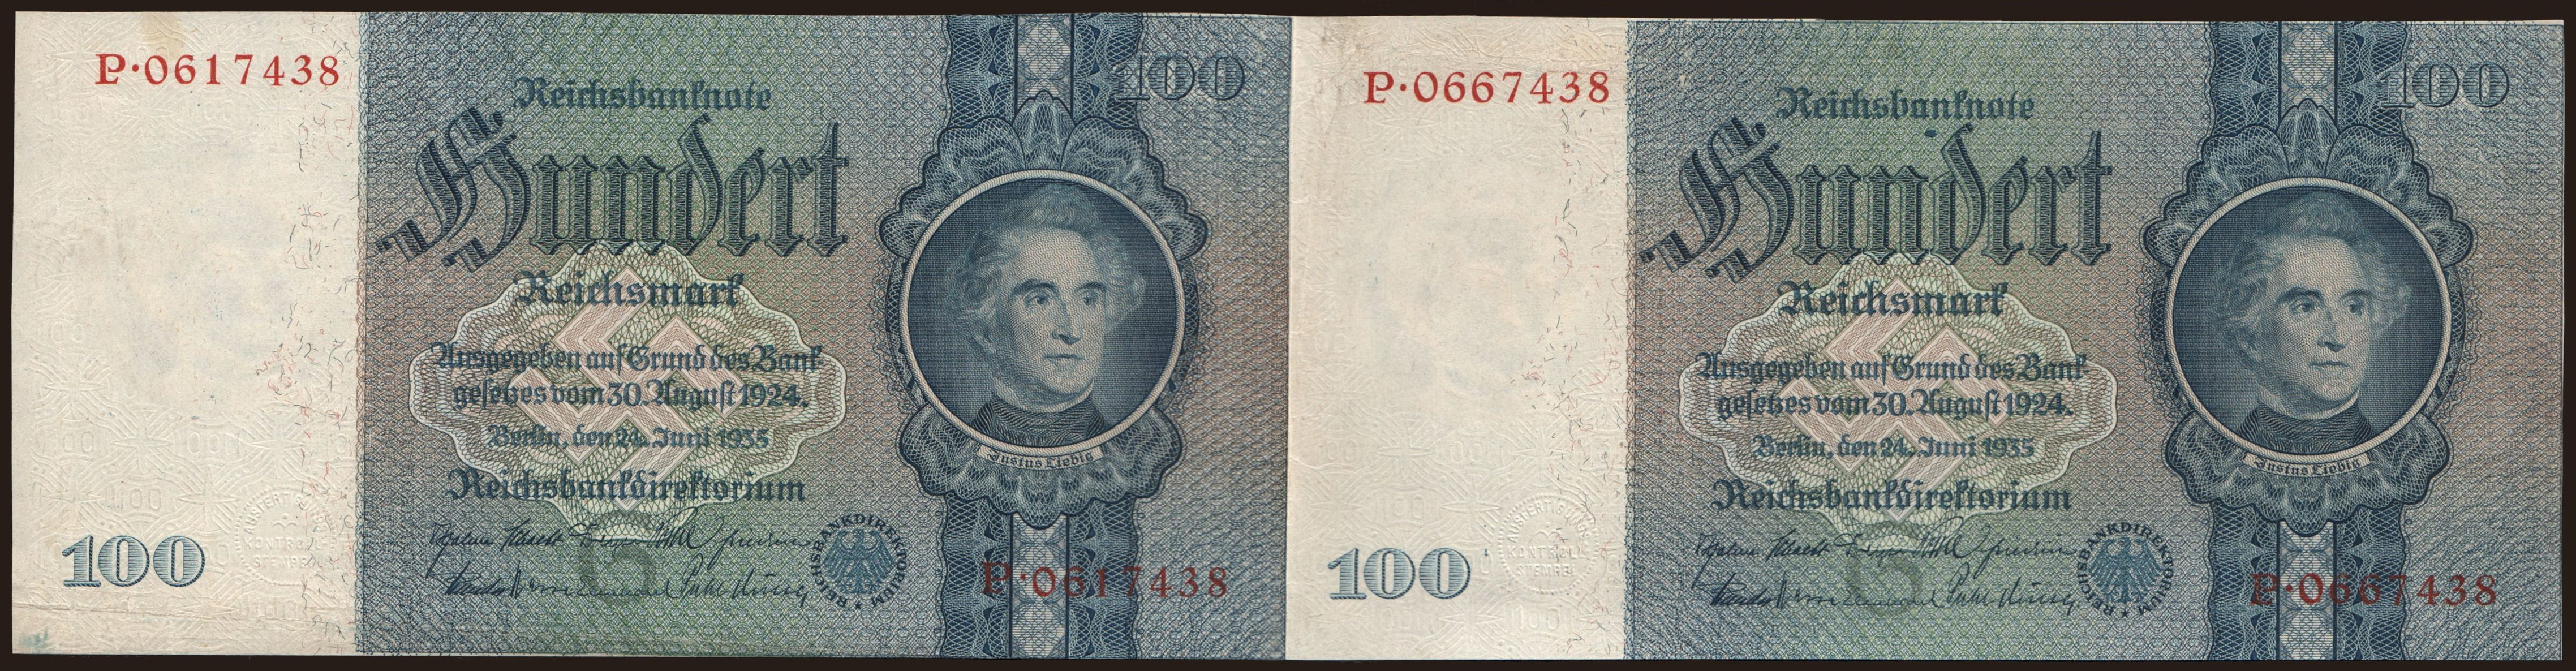 100 Reichsmark, 1935, G/Q, 2x